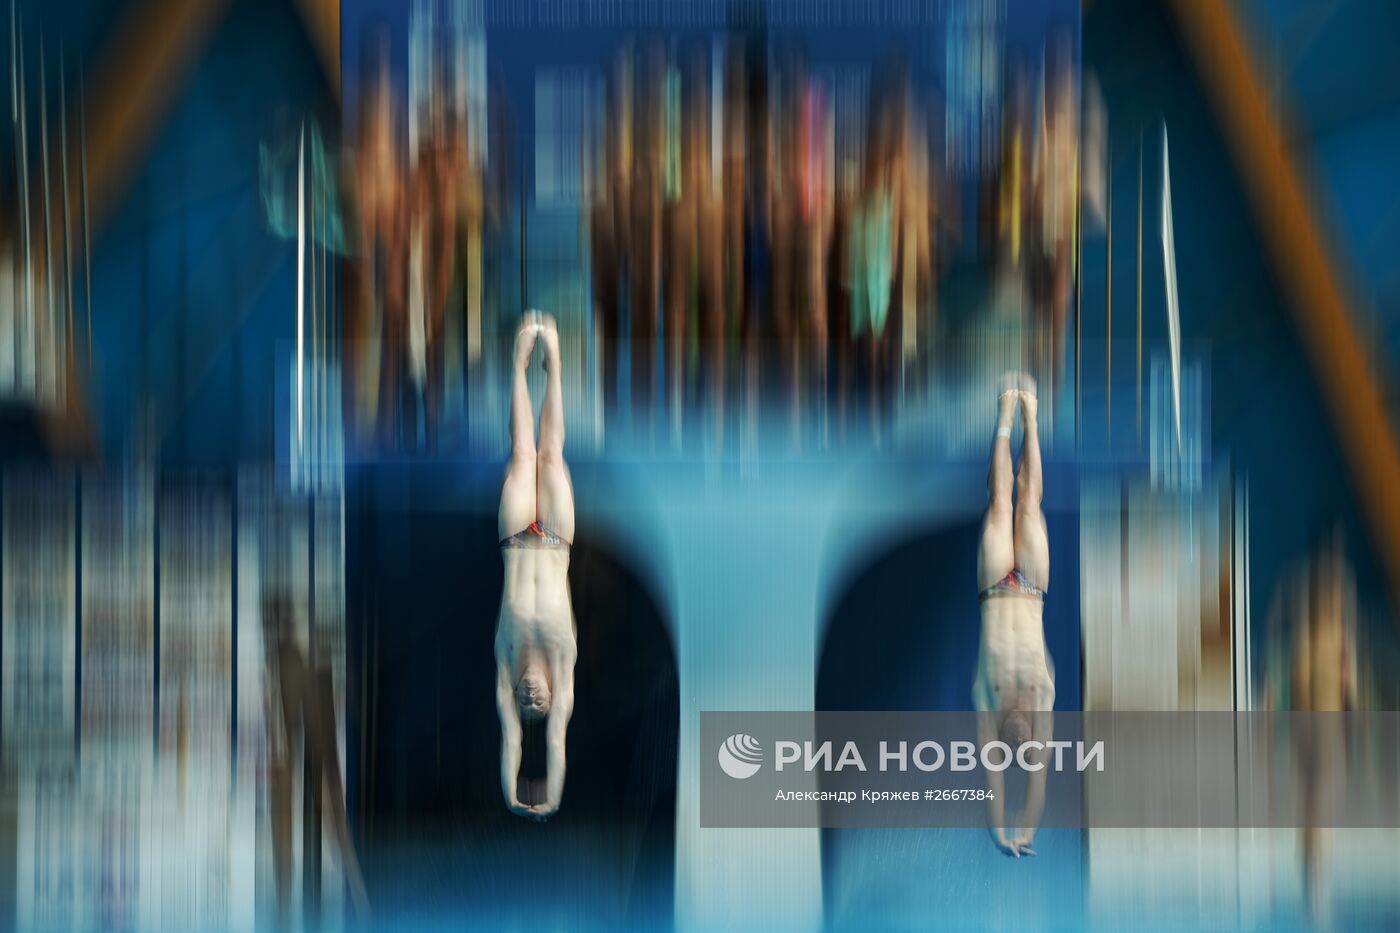 Чемпионат мира FINA 2015. Синхронные прыжки в воду. Мужчины. Трамплин 3м. Финал